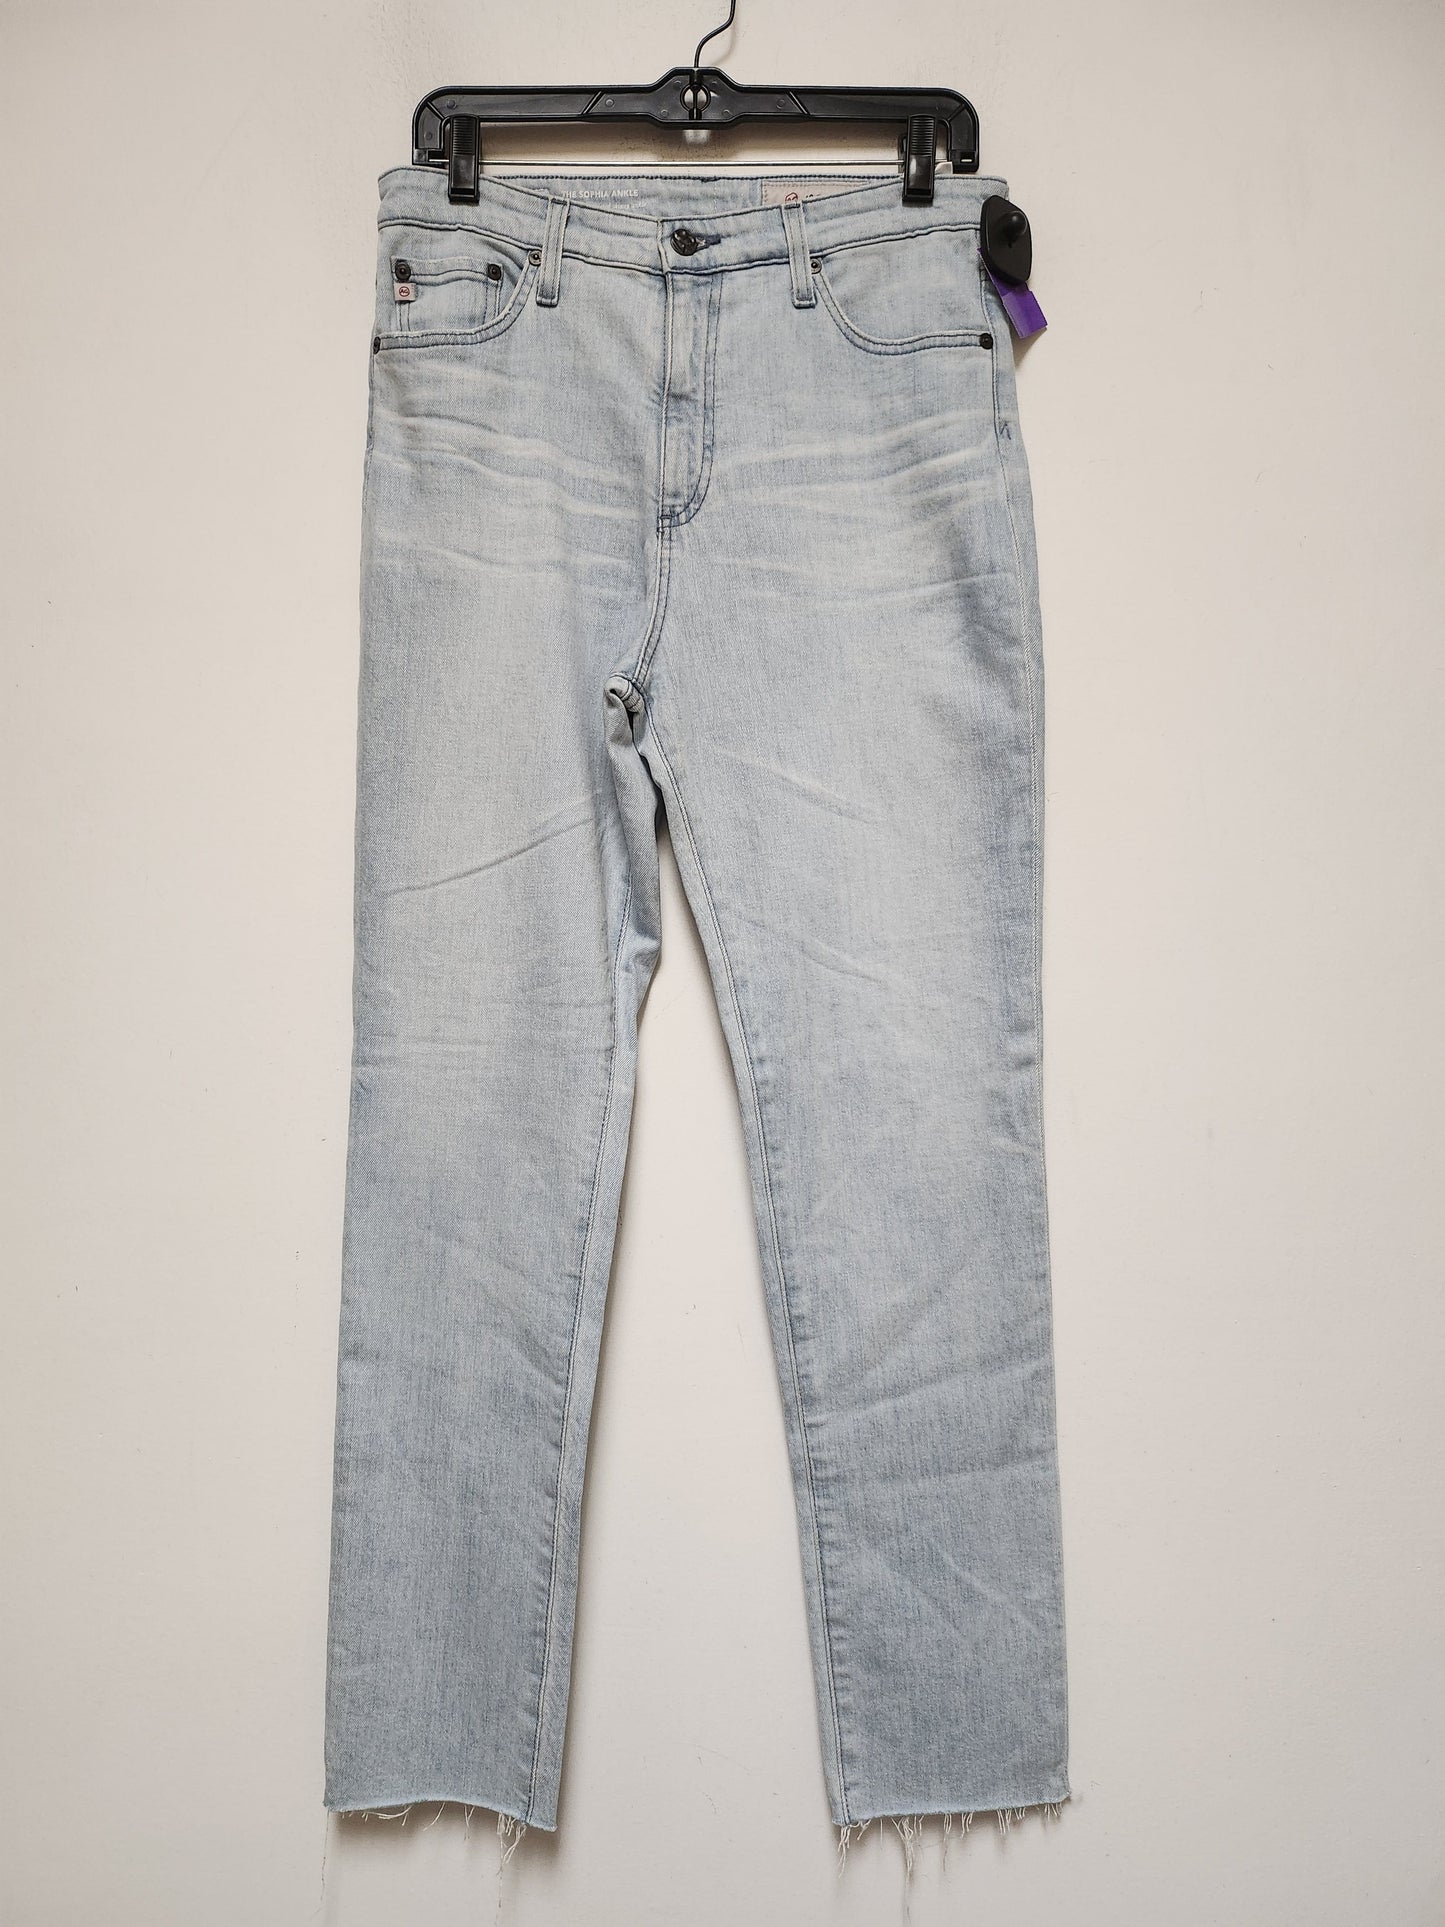 Blue Denim Jeans Skinny Adriano Goldschmied, Size 8